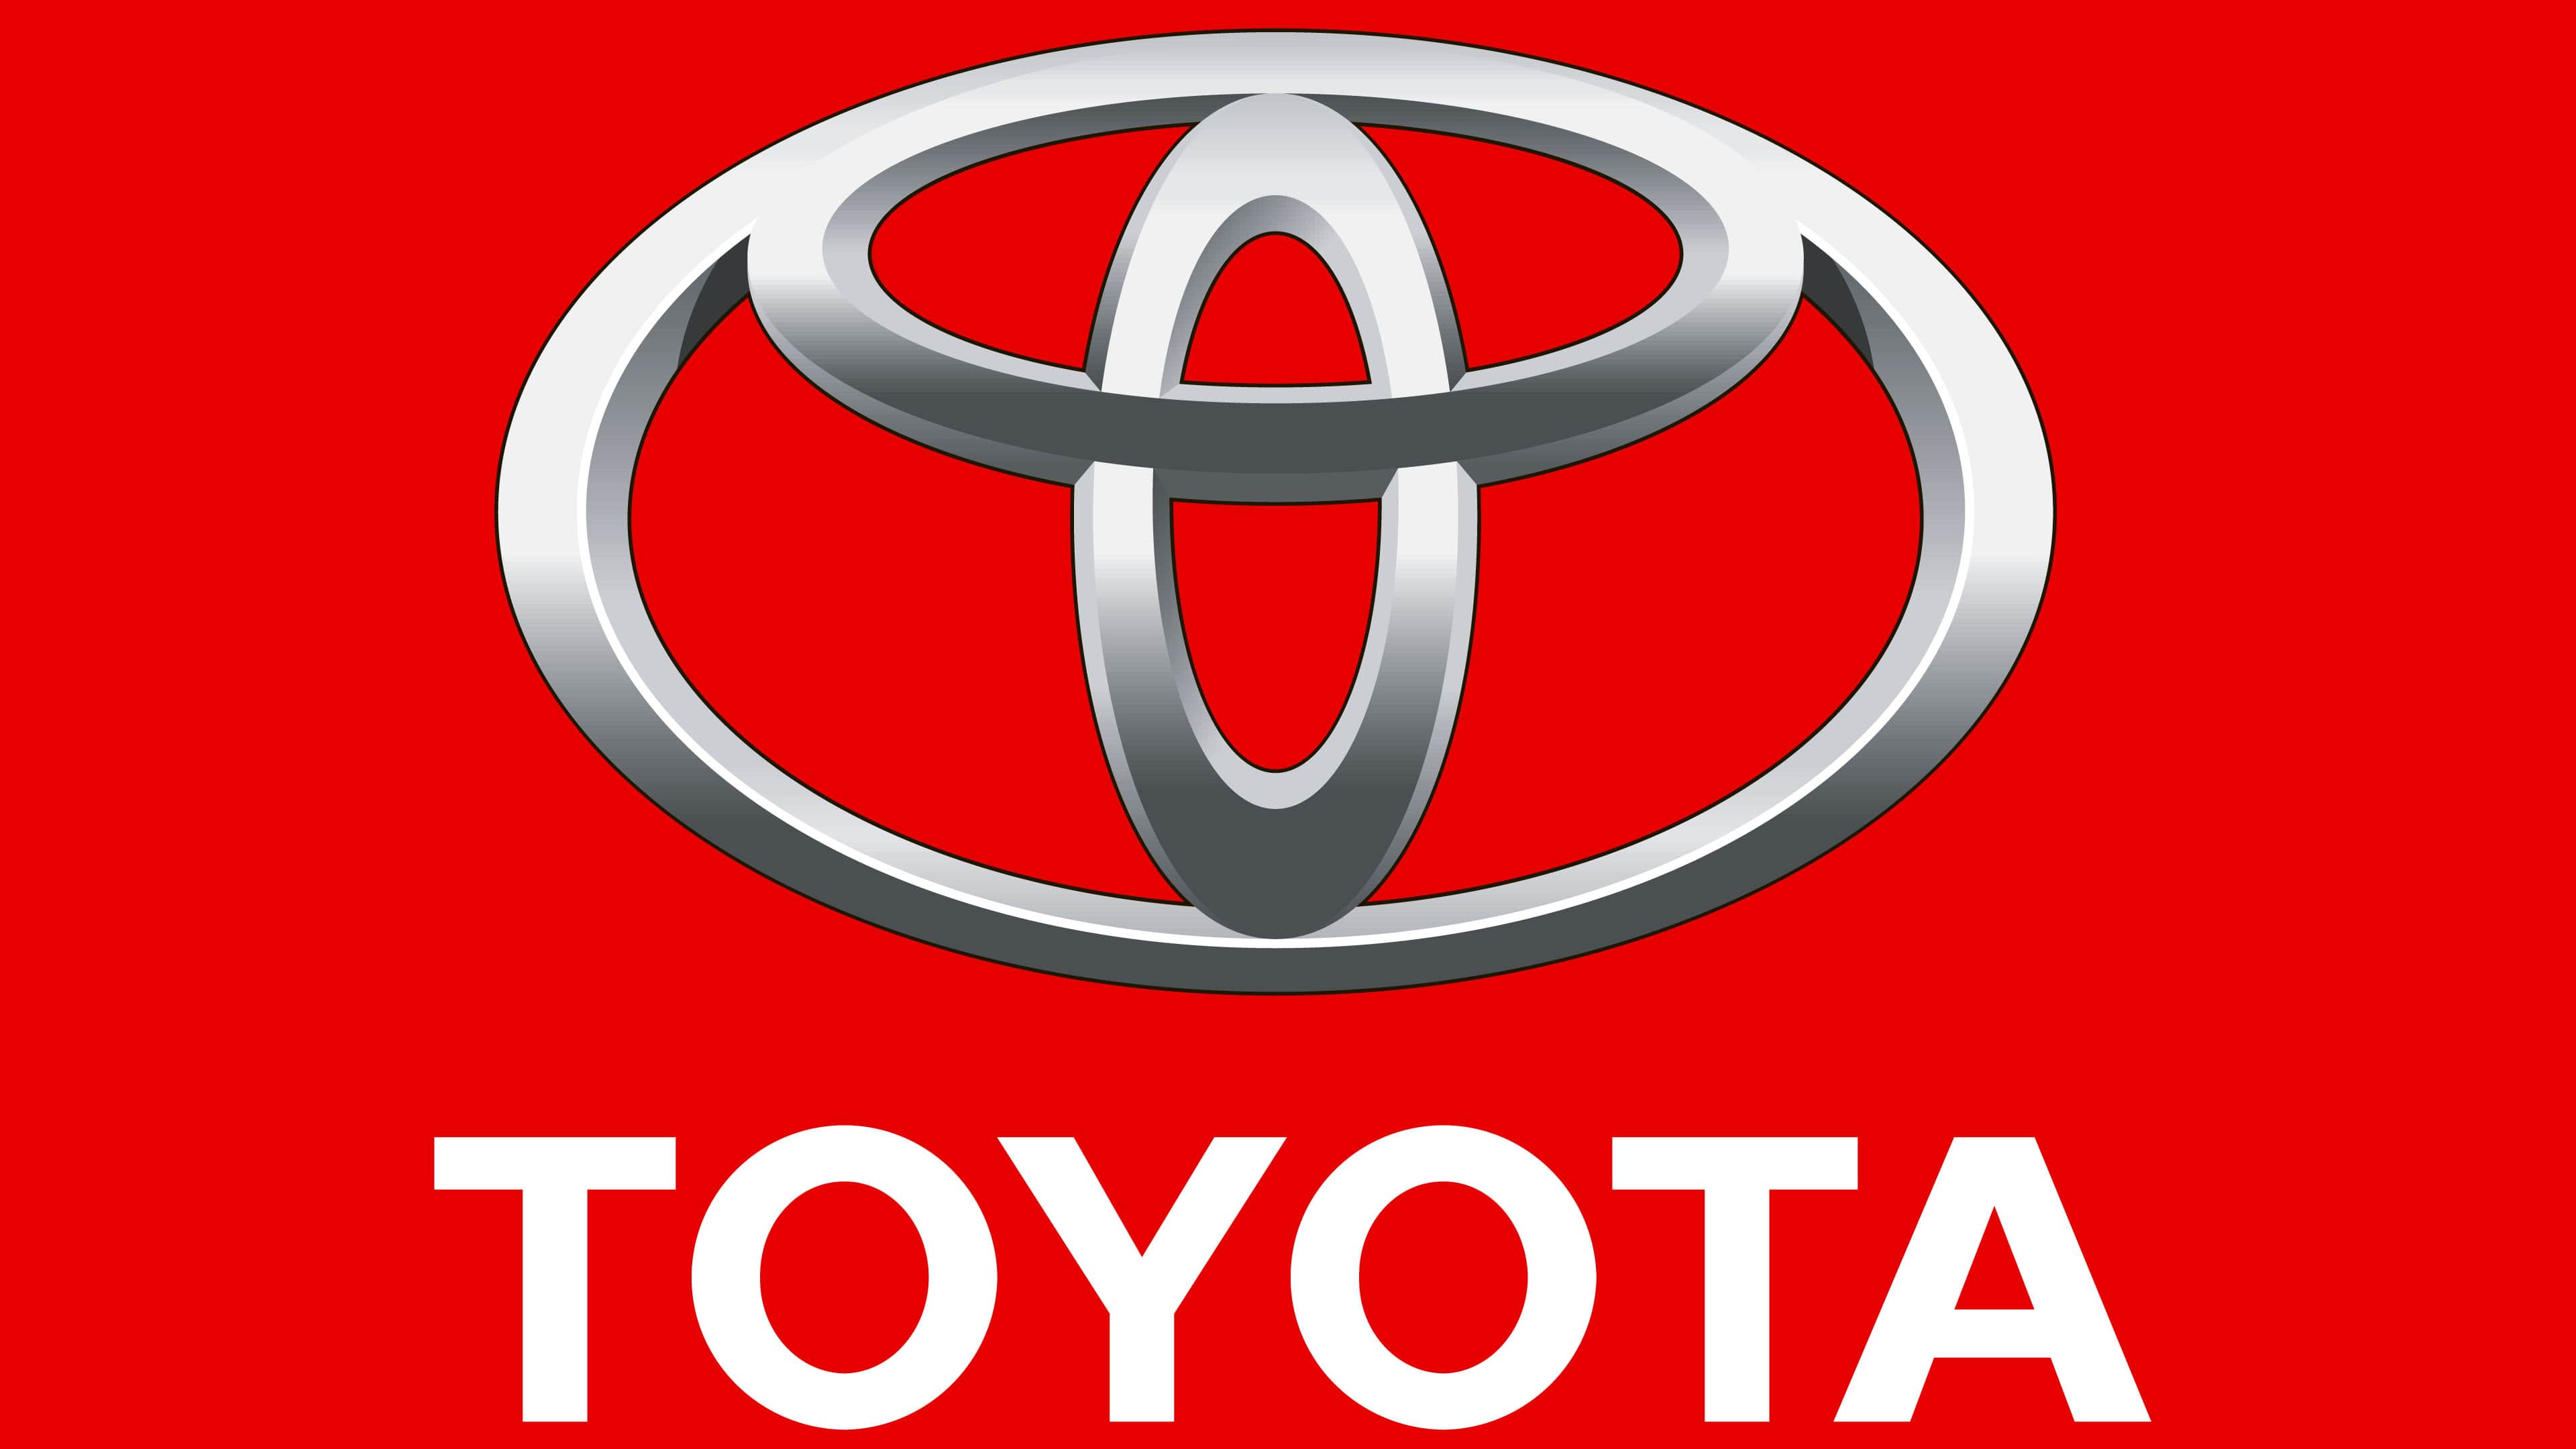 Logo De Toyota La Historia Y El Significado Del Logotipo La Marca Y ...